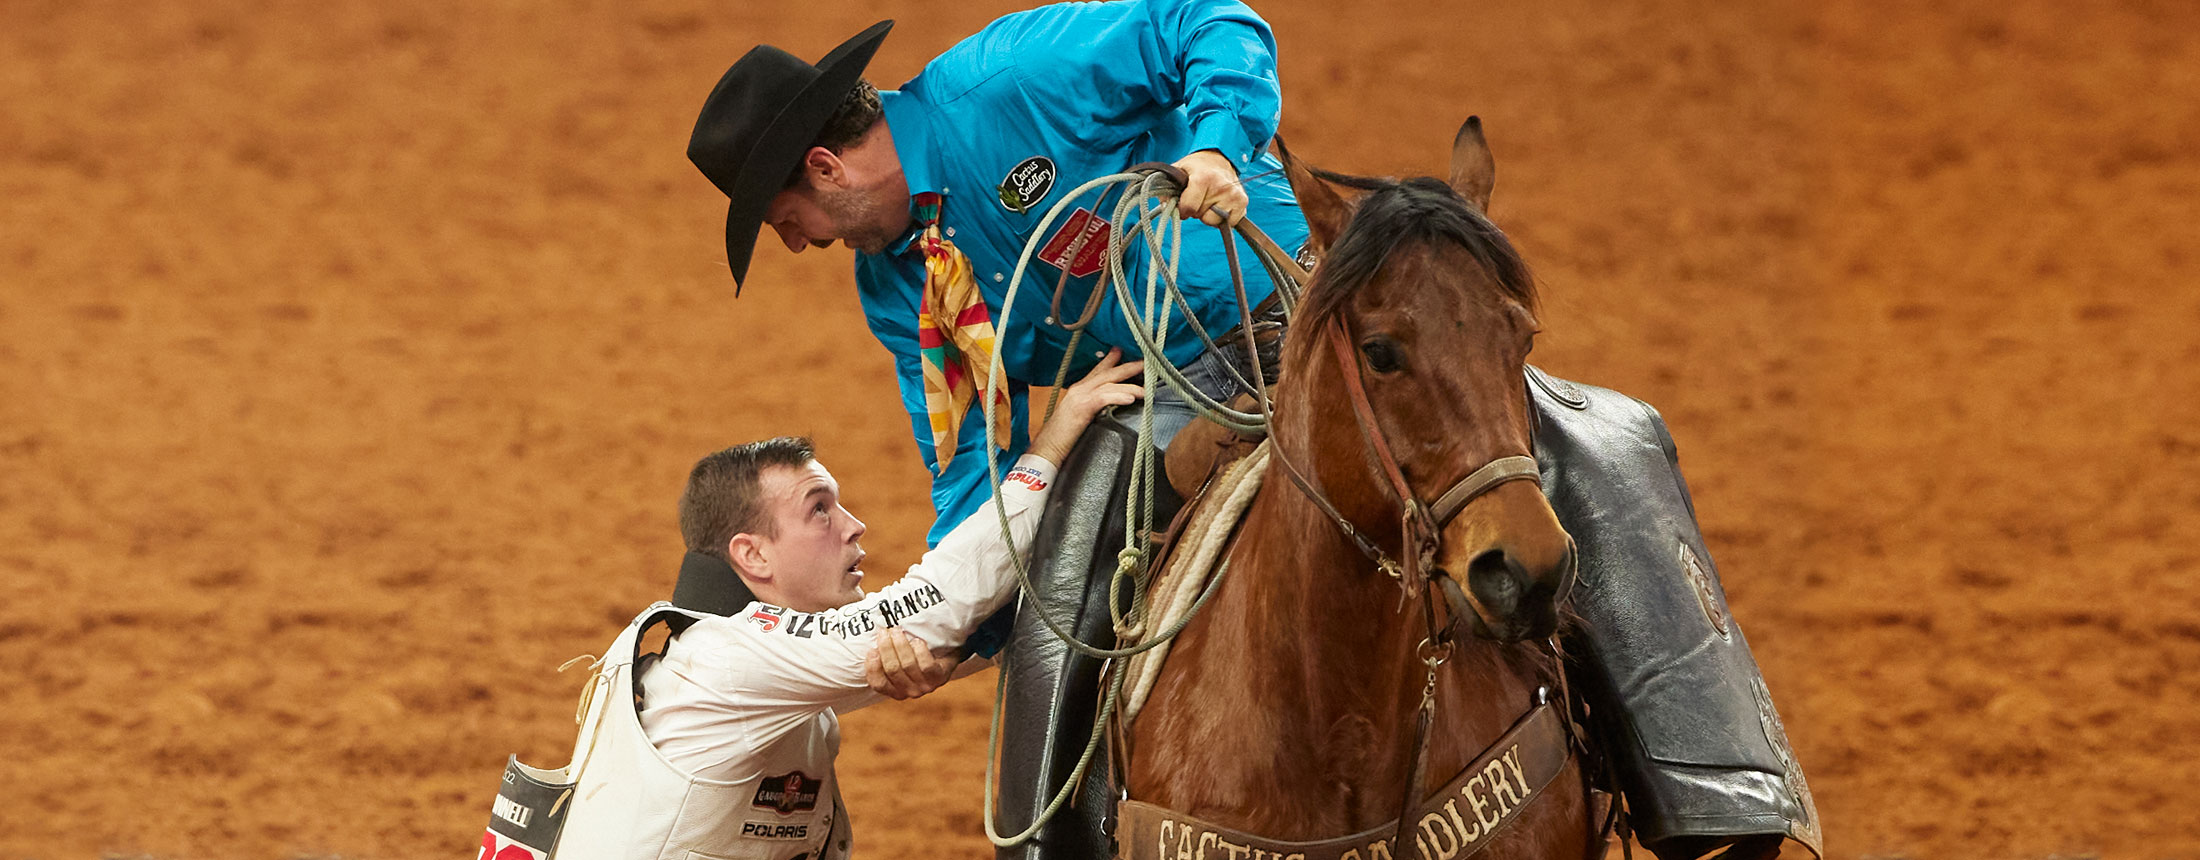 Un recolector está ayudando a Tim O'Connell a bajar de su caballo en el rodeo.